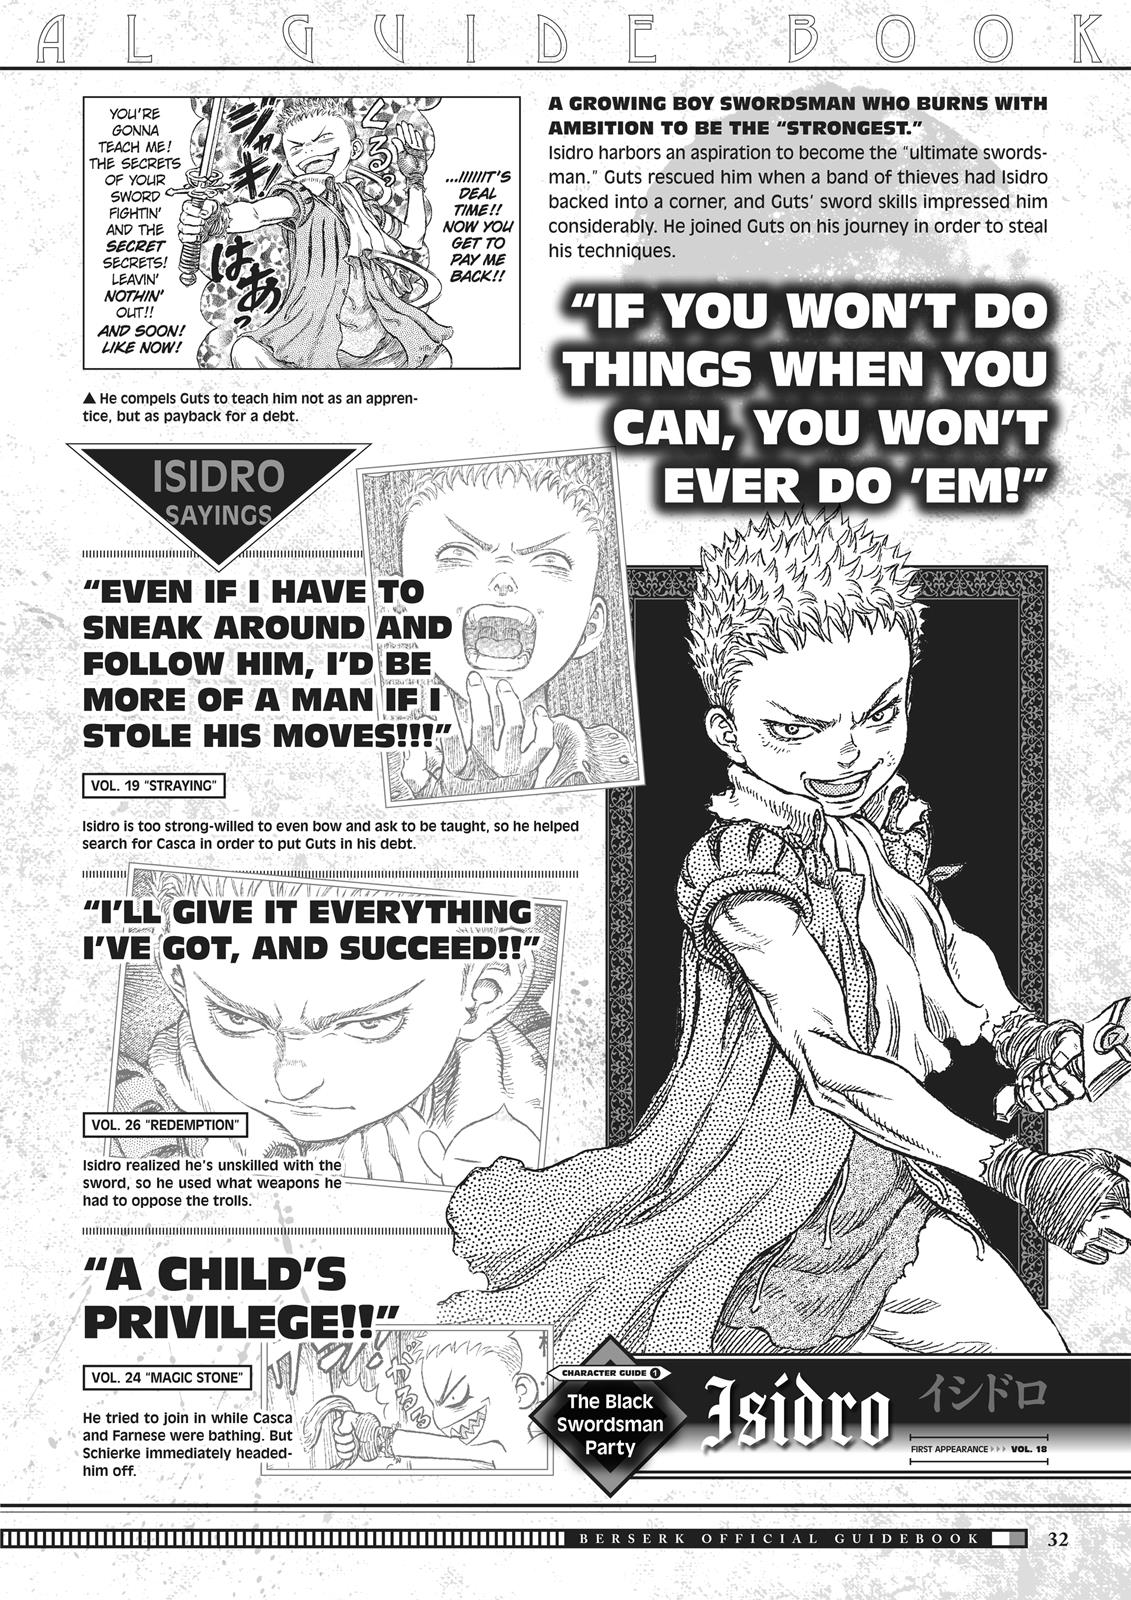 Berserk Manga Chapter 350.5 image 032